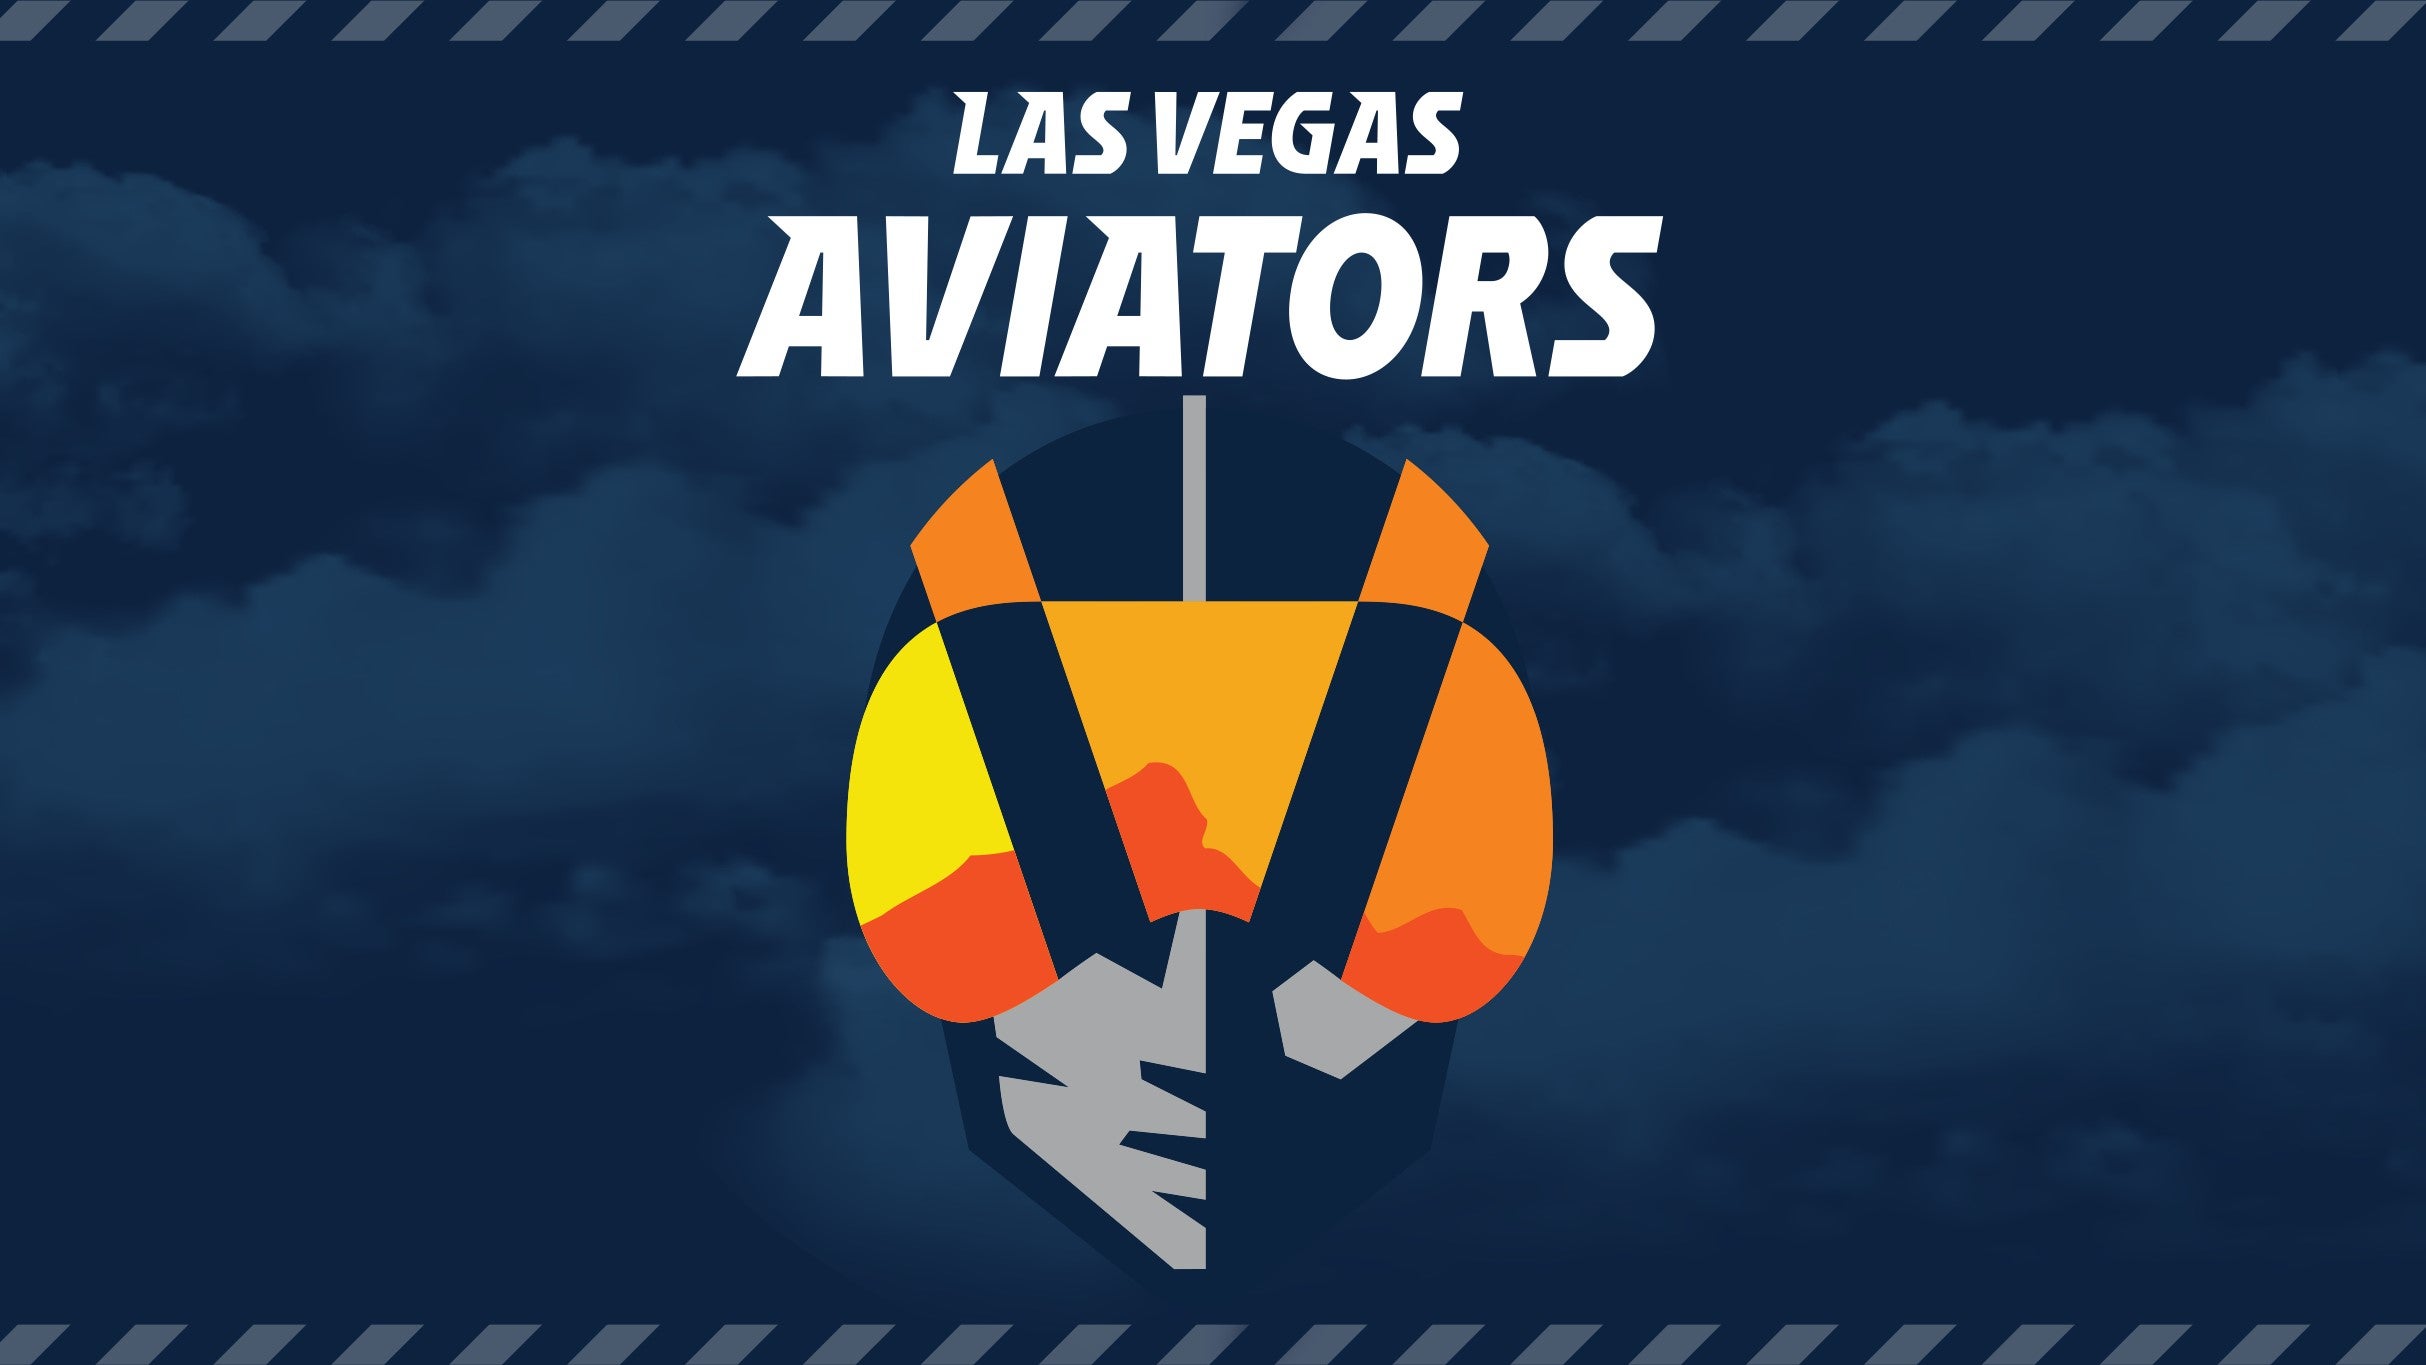 Las Vegas Aviators vs. Albuquerque Isotopes presales in Las Vegas